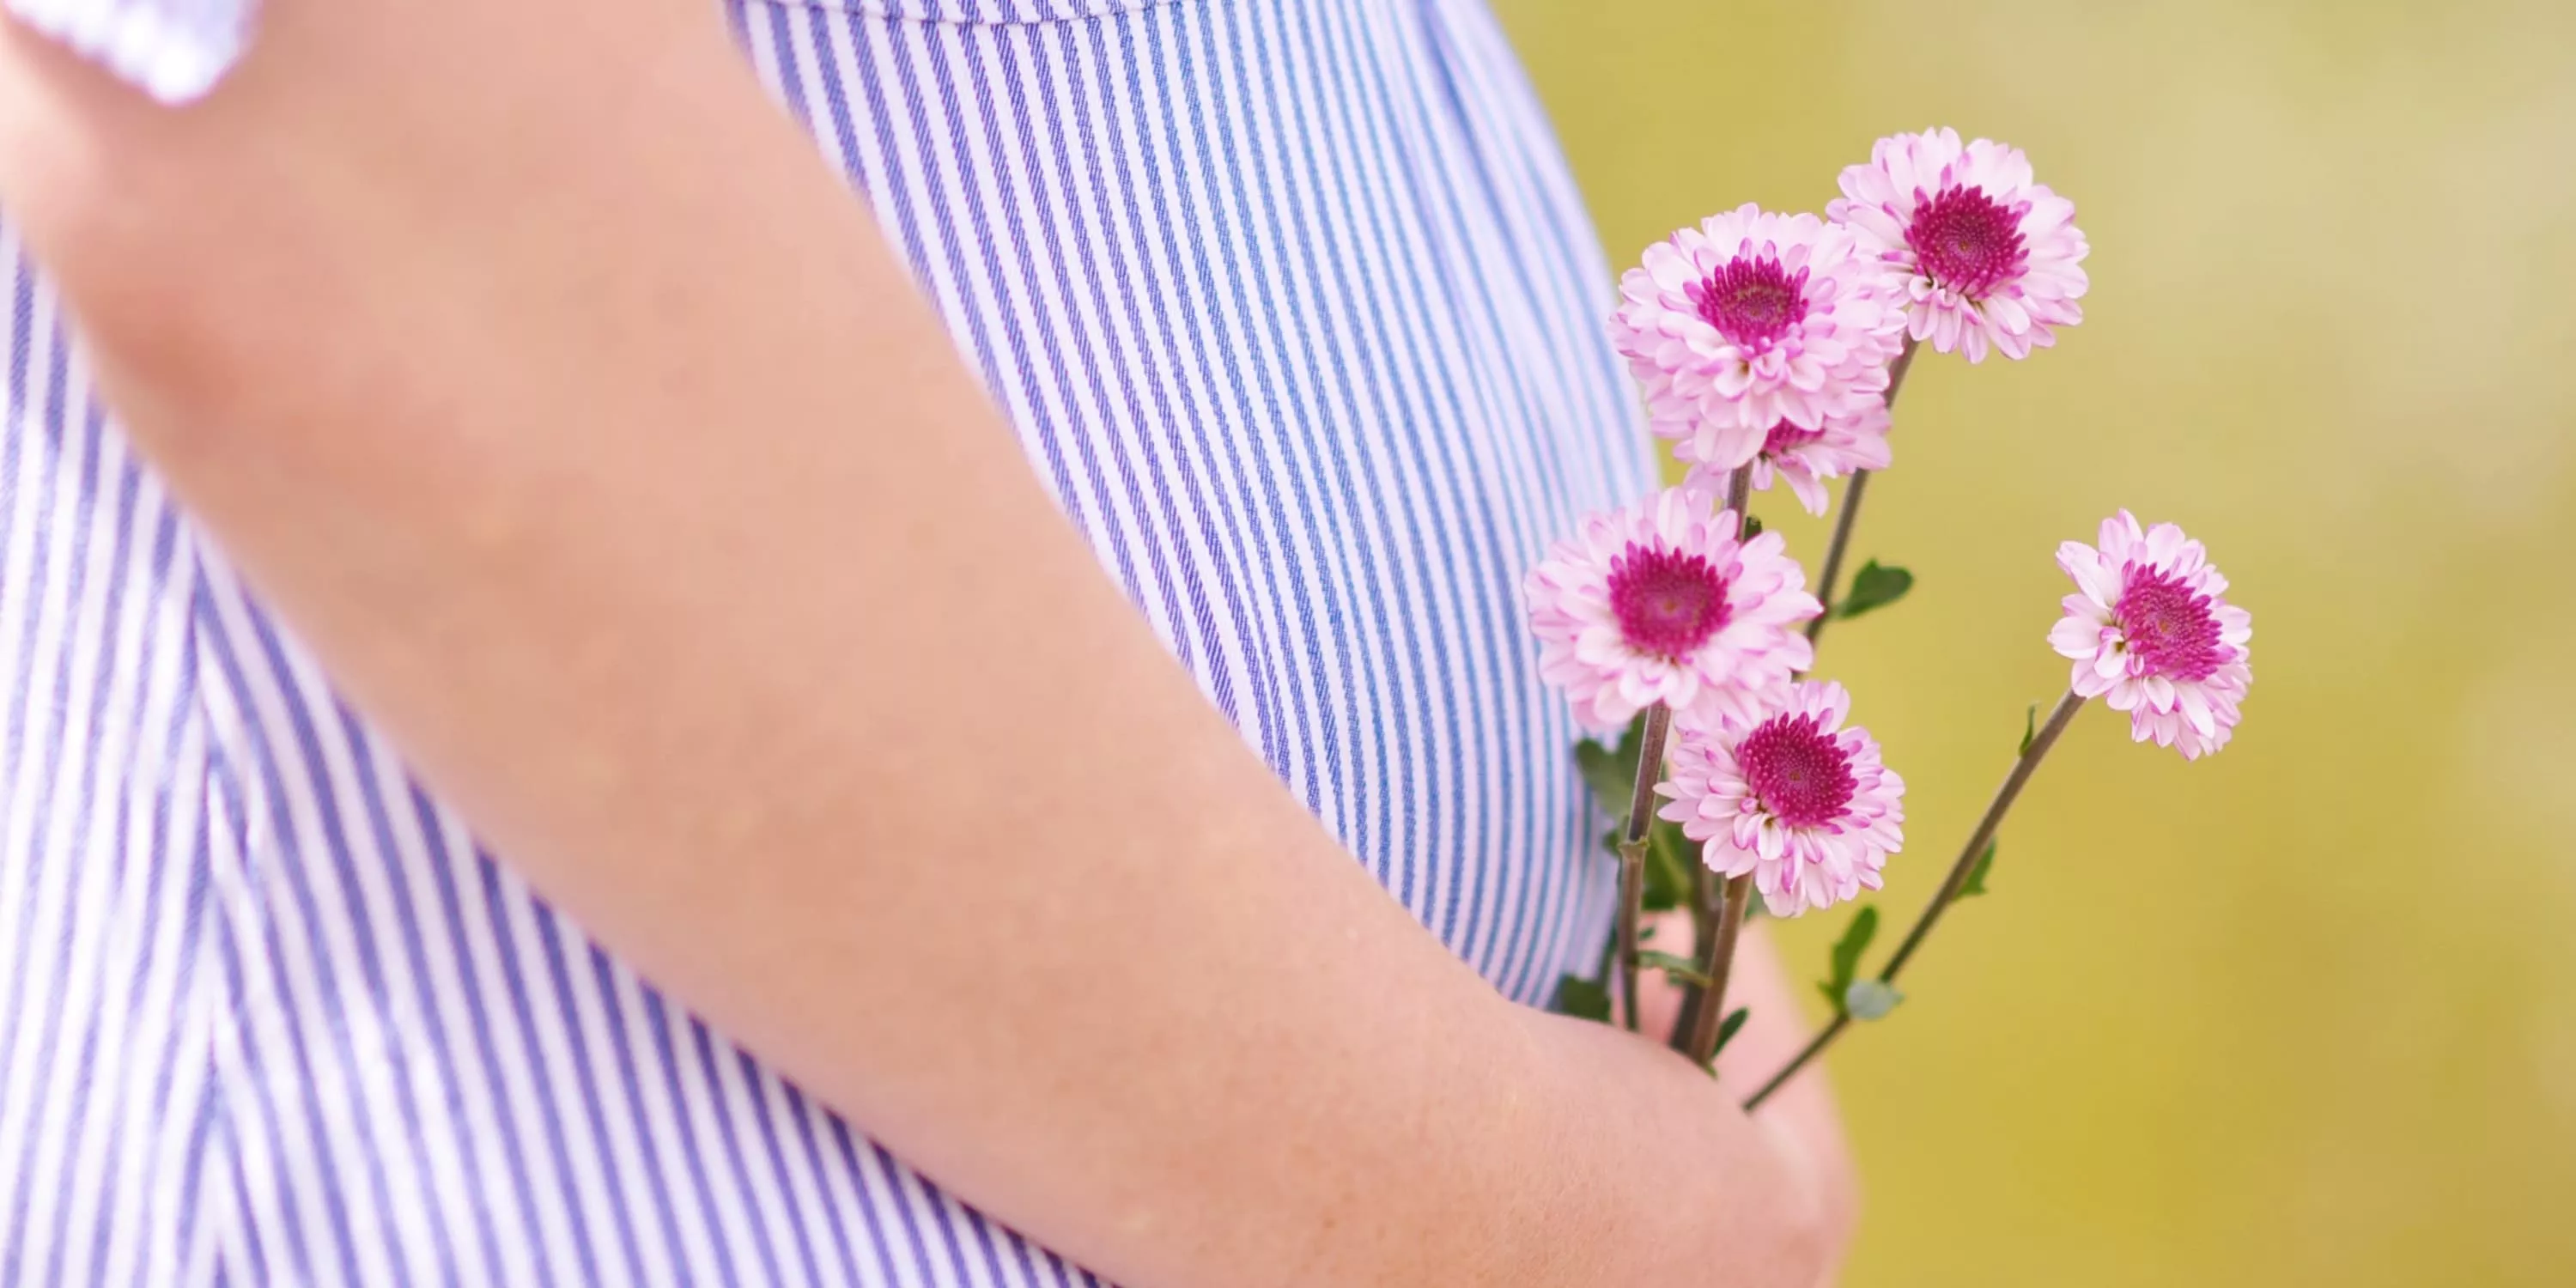 Ausschnitt von Babybauch einer schwangeren Frau, die Blumen hält